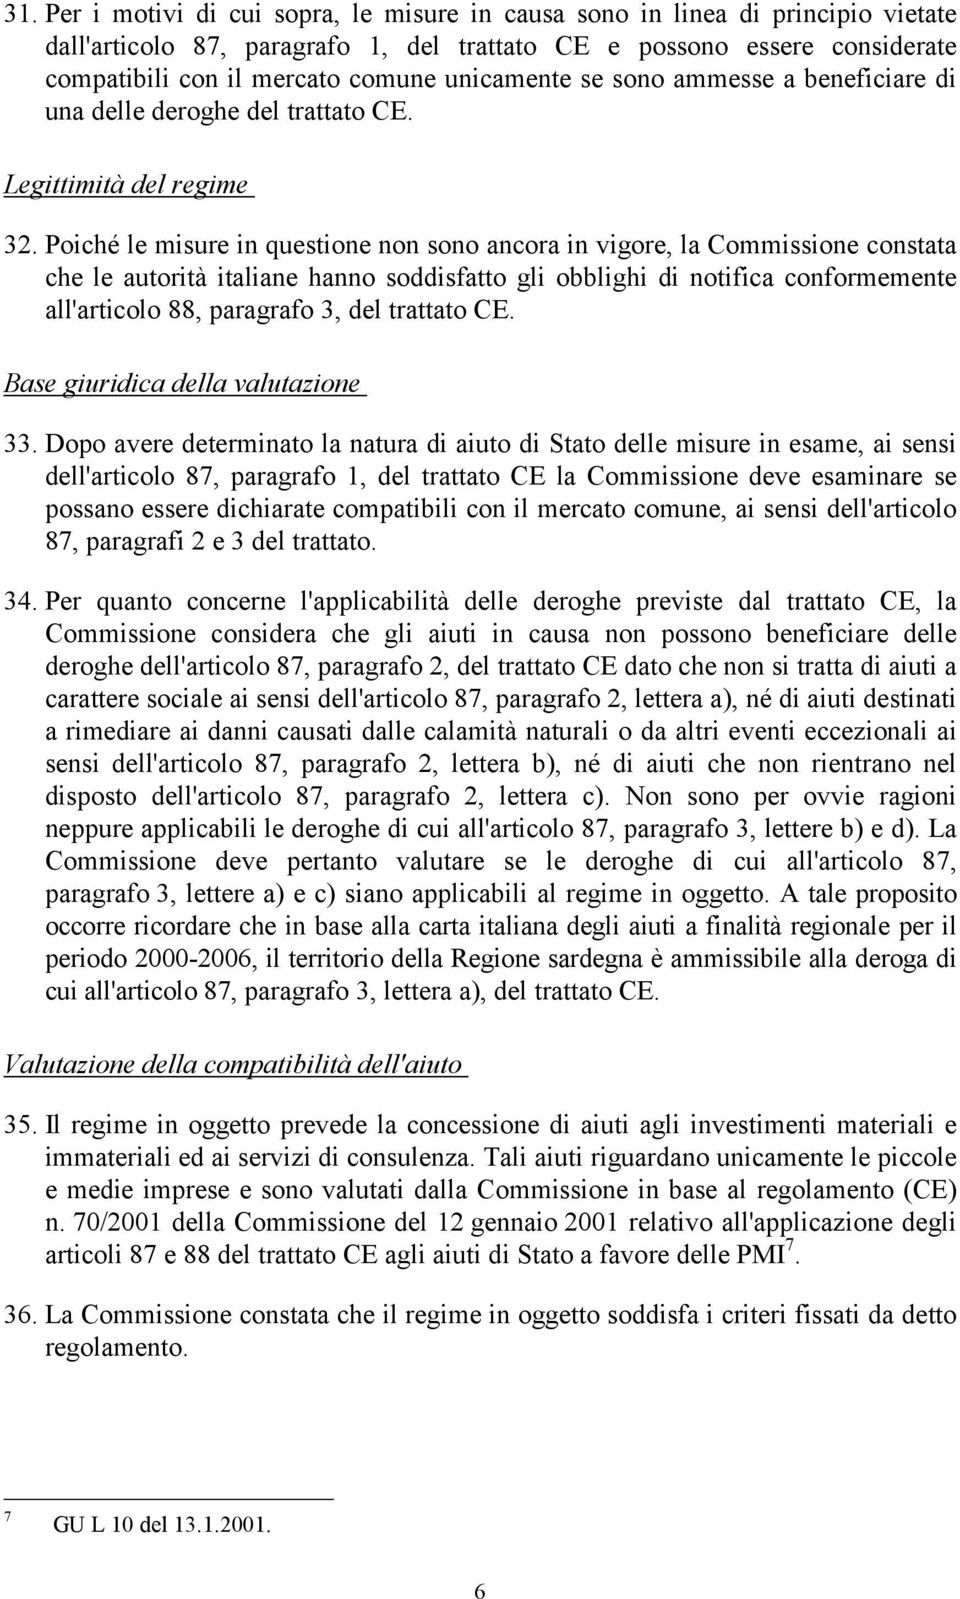 Poiché le misure in questione non sono ancora in vigore, la Commissione constata che le autorità italiane hanno soddisfatto gli obblighi di notifica conformemente all'articolo 88, paragrafo 3, del